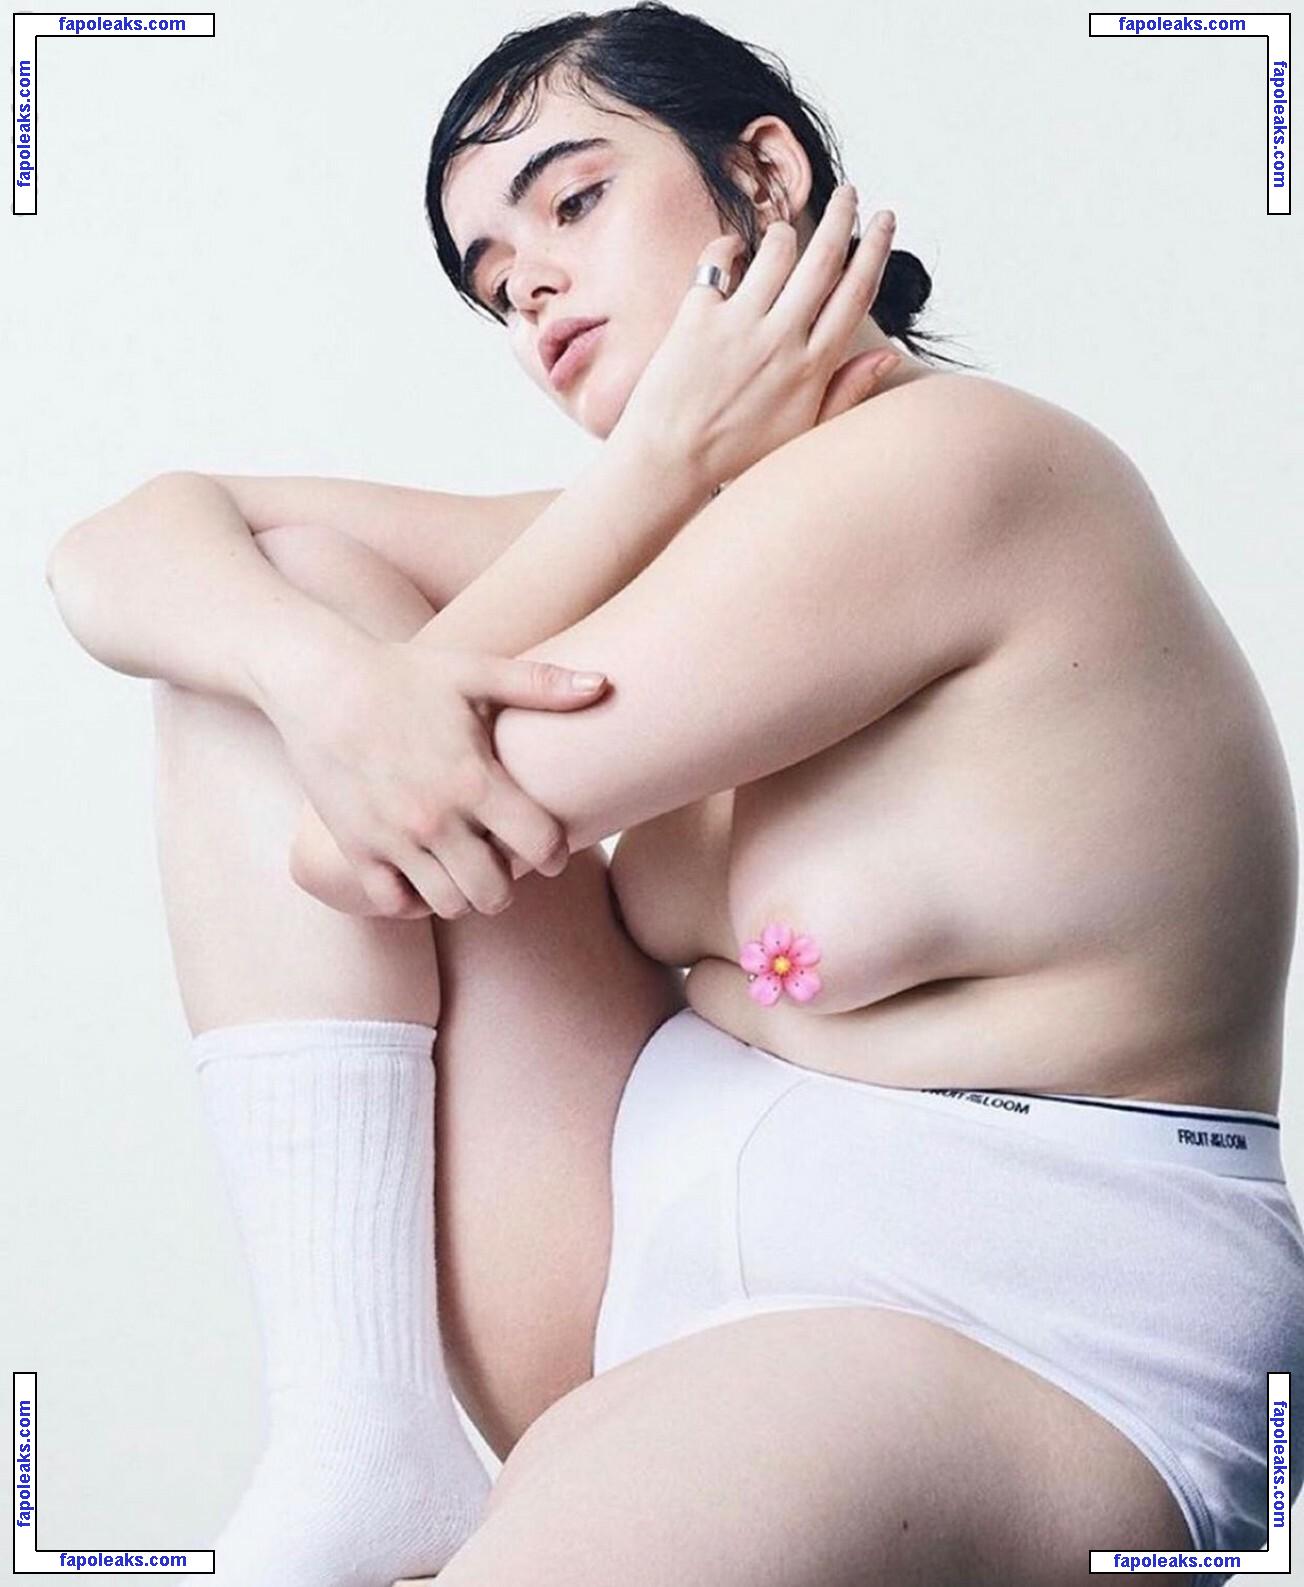 Barbie Ferreira / barbieferreira / sexibarbie голая фото #0131 с Онлифанс